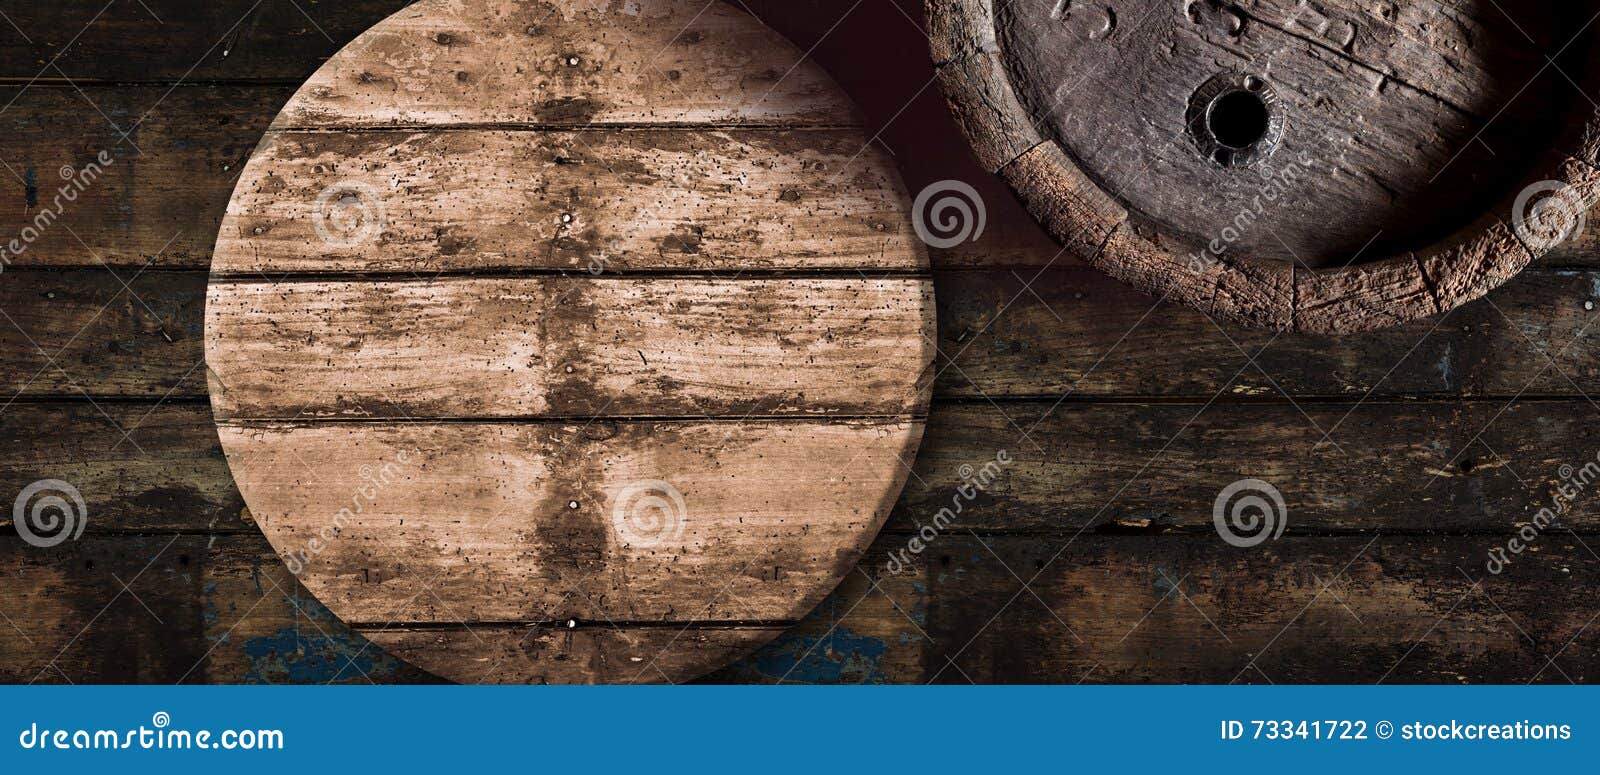 old oak beer or wine barrel background